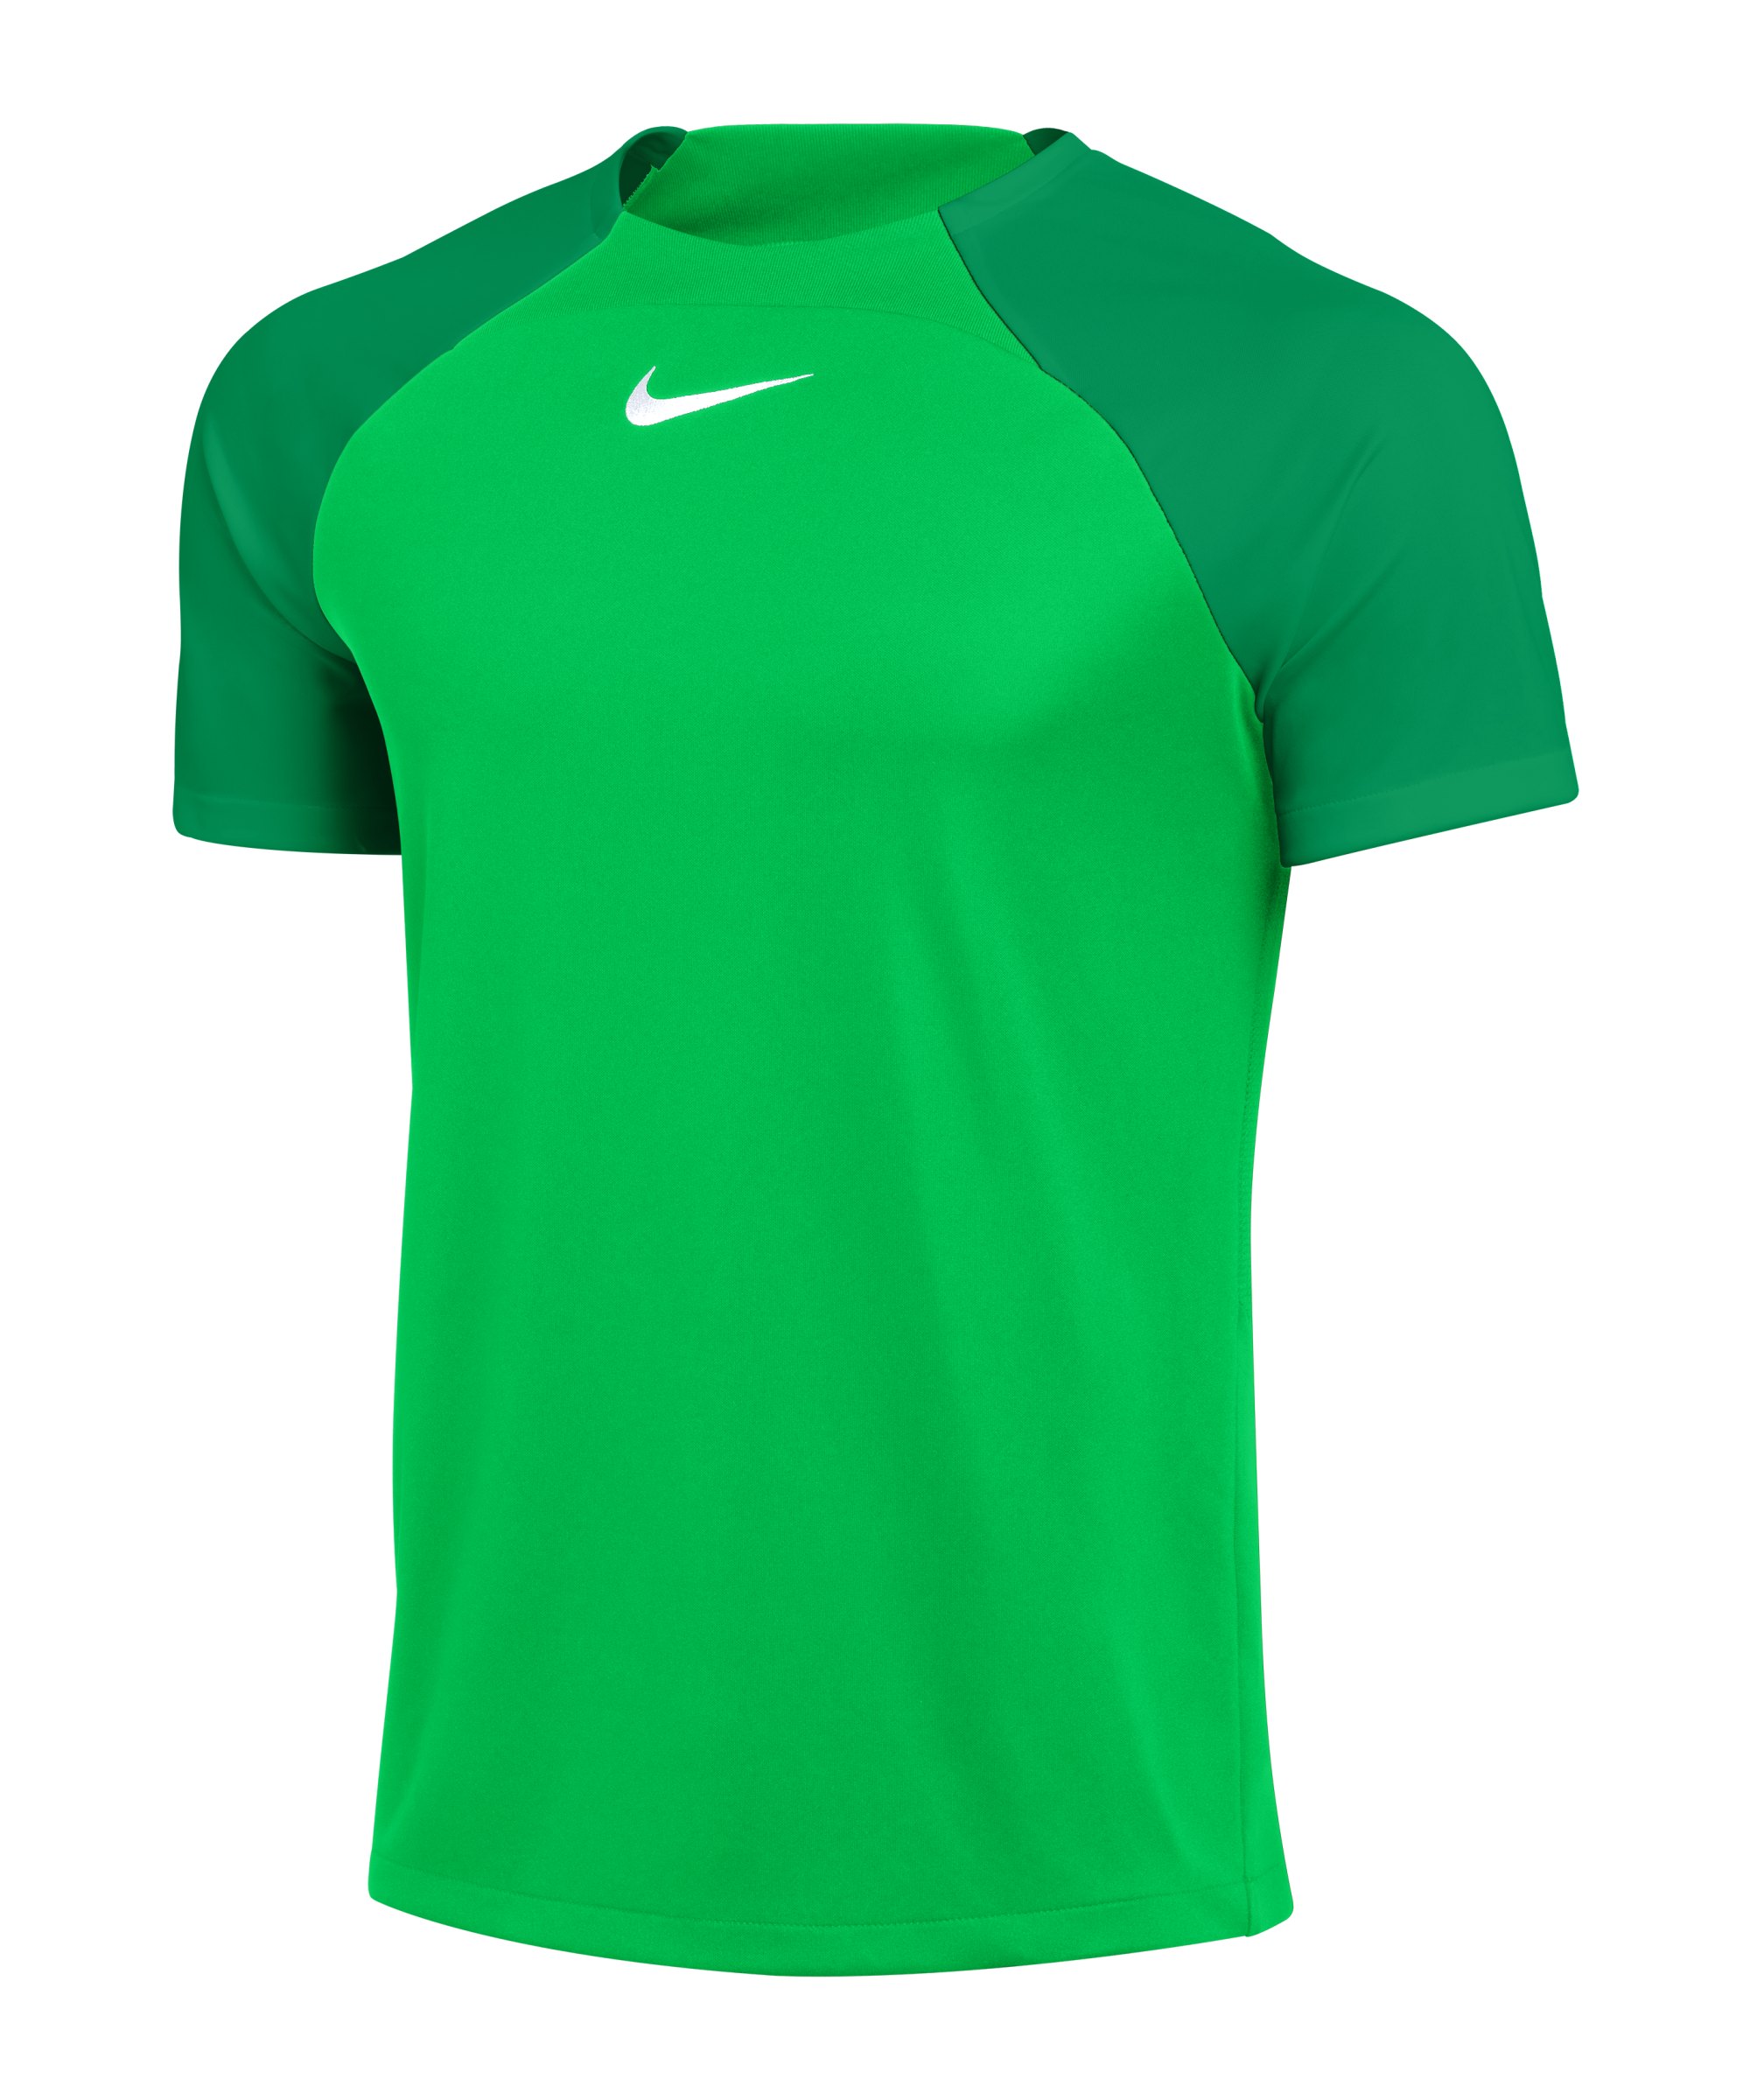 Nike Academy Pro Trainingsshirt Grün Weiss F329 - gruen